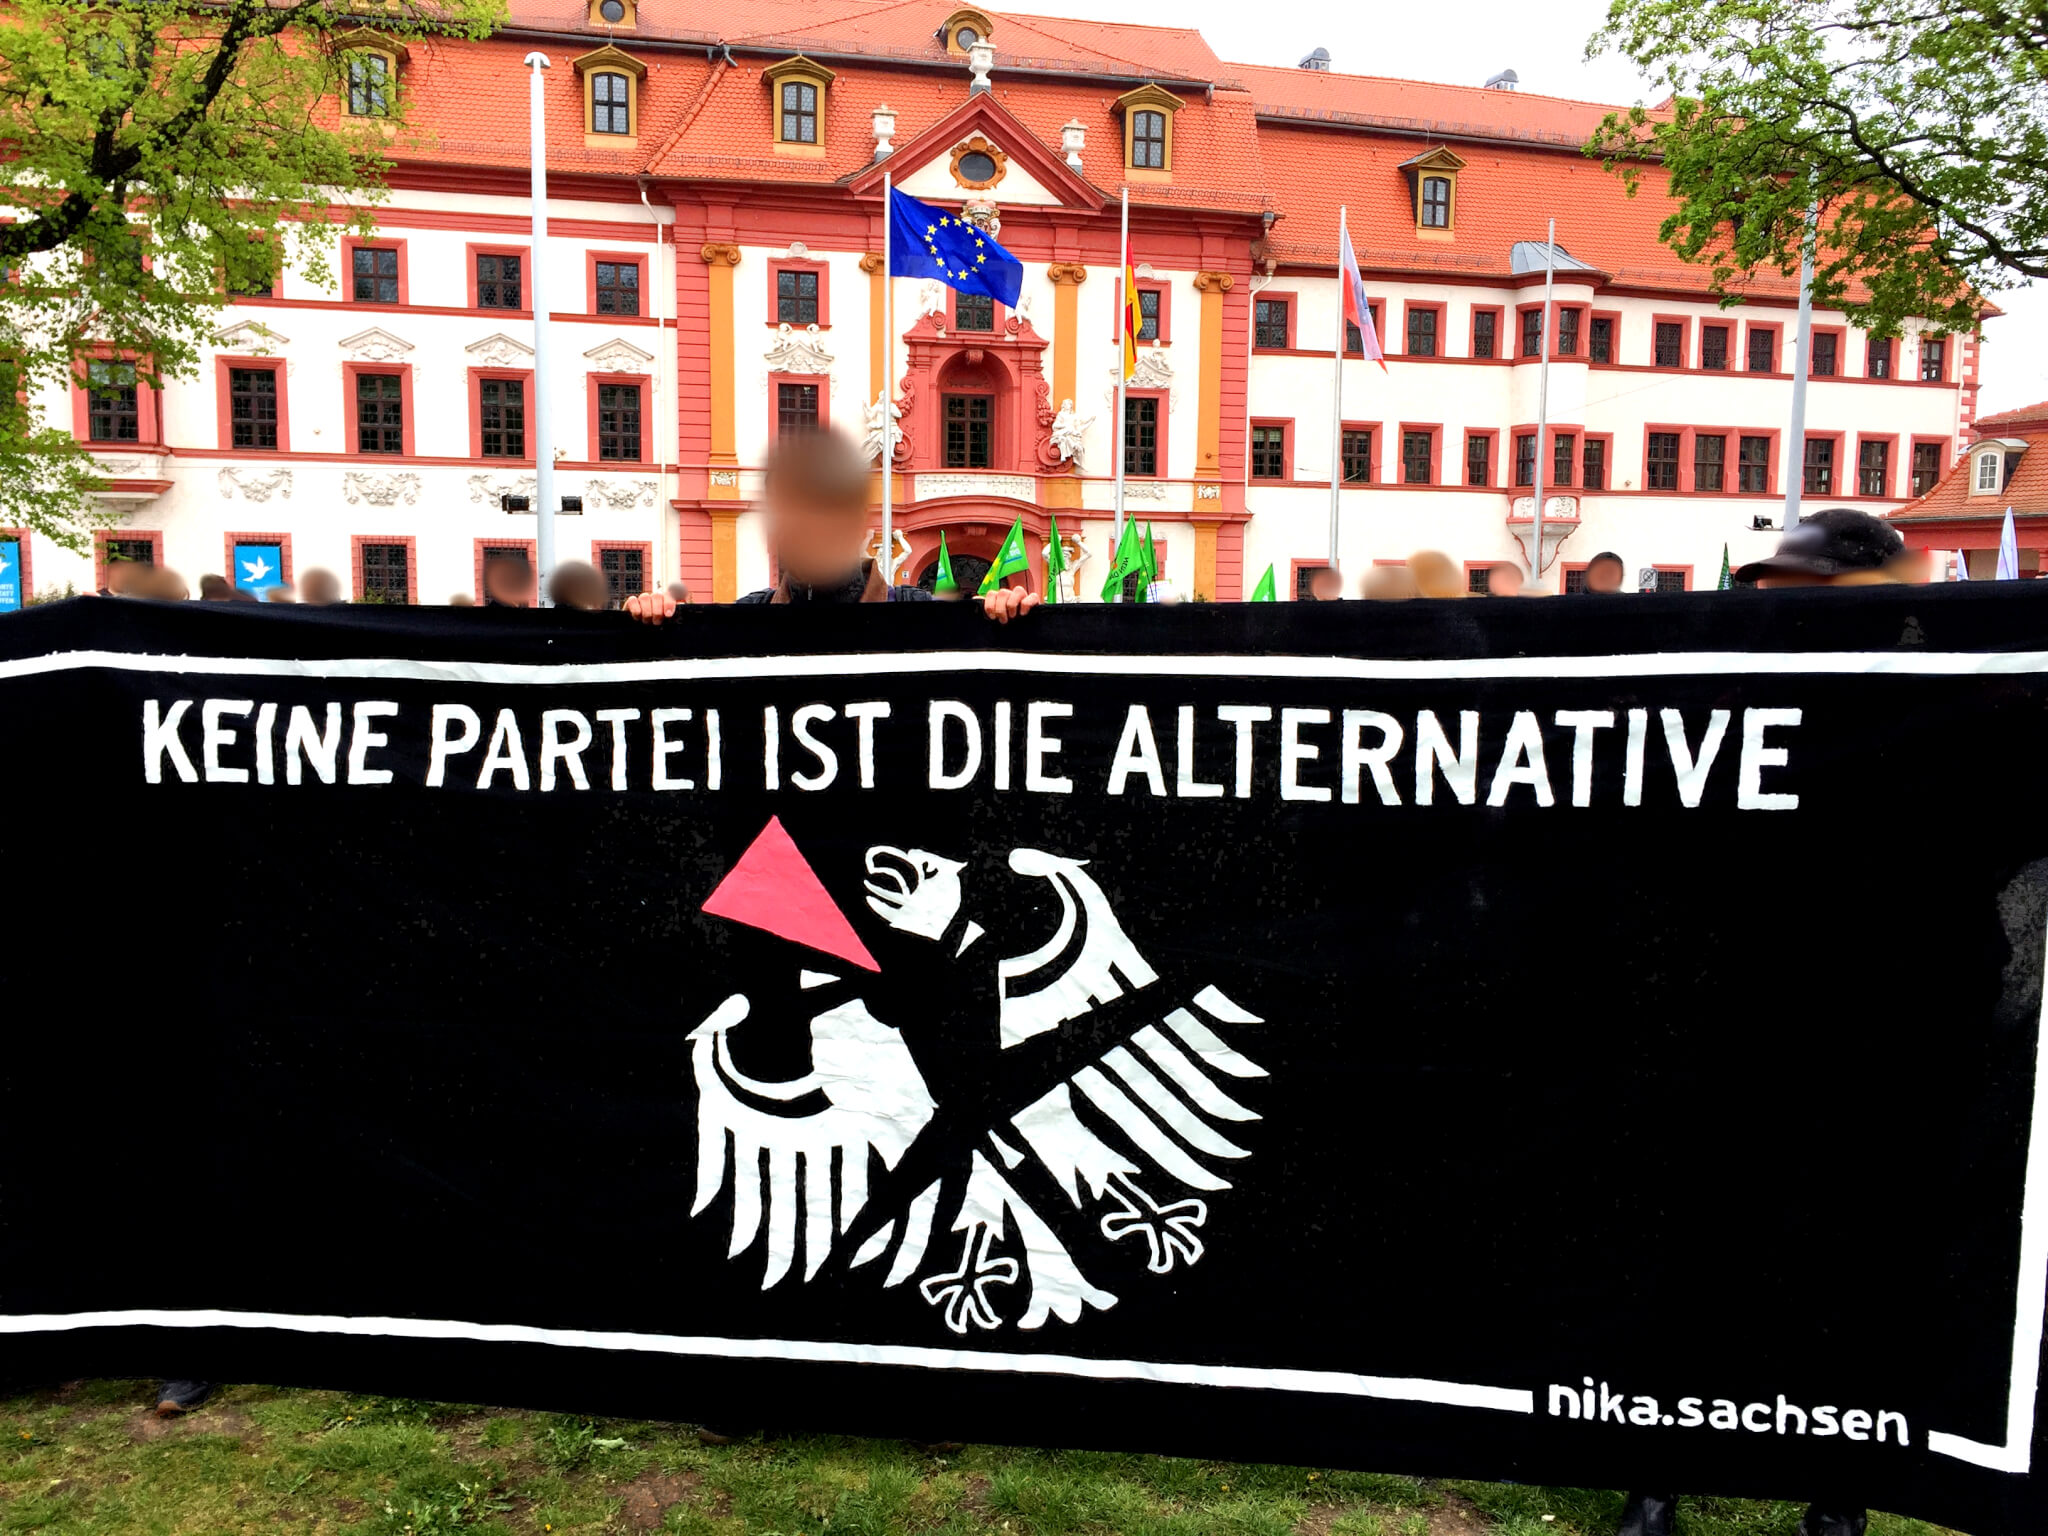 Titelbild: Transparent mit der Aufschrift "Keine Partei ist die Alternative" bei der 1. Mai Demo in Erfurt